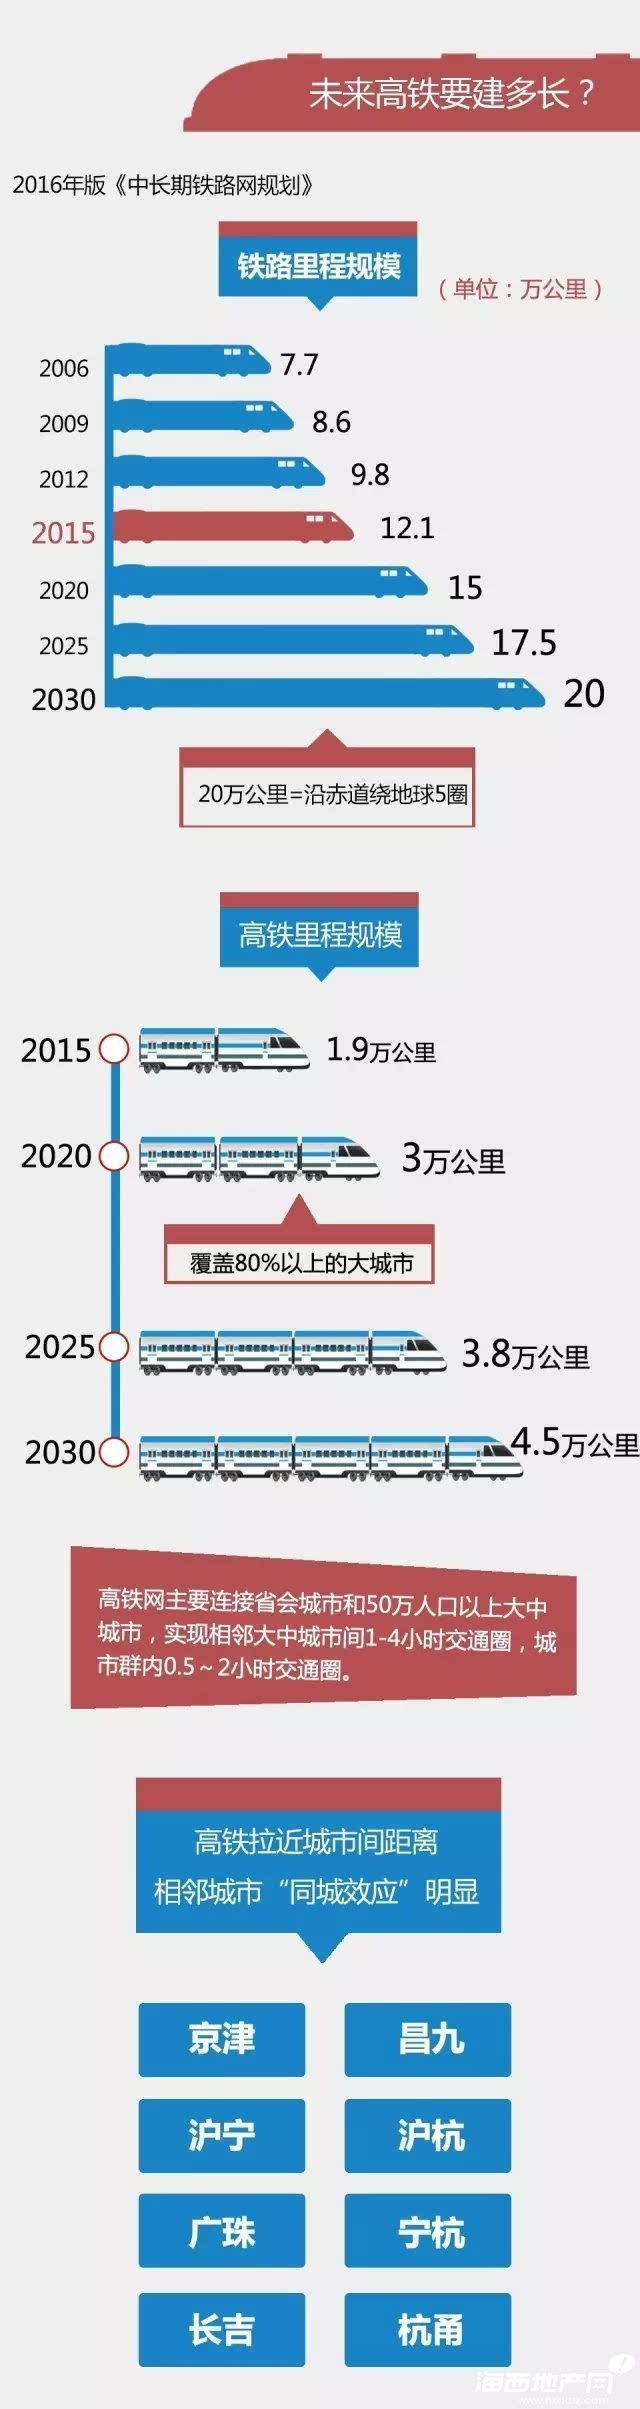 中国亚博买球网址中铁电气化局是中国铁路电气化最大总里程突破48万公里